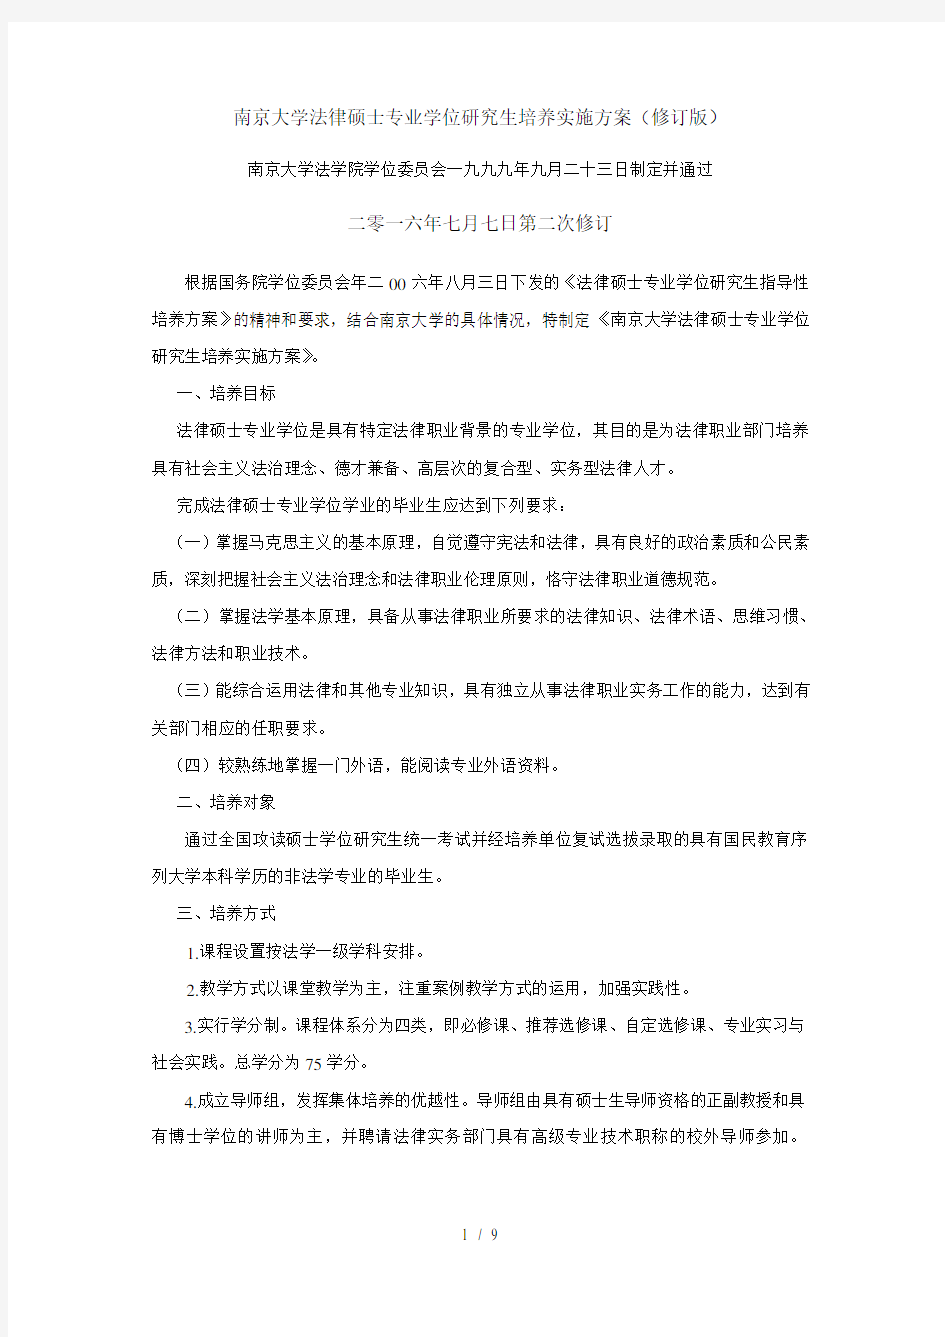 南京大学法律硕士专业学位研究生培养实施方案(修订版)